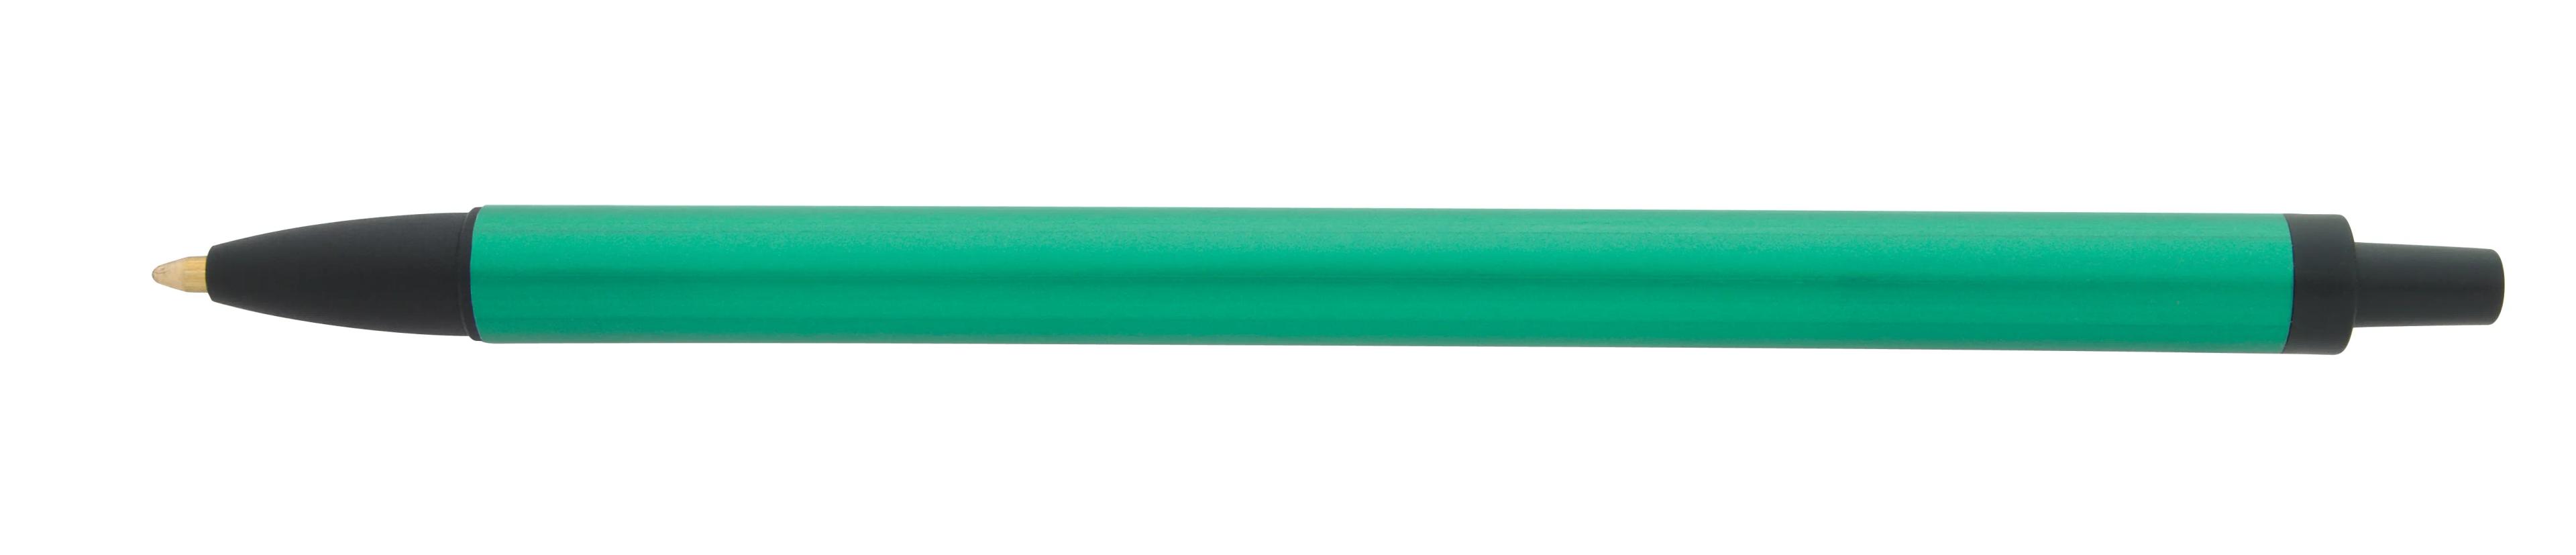 Metallic Contender Pen 2 of 12